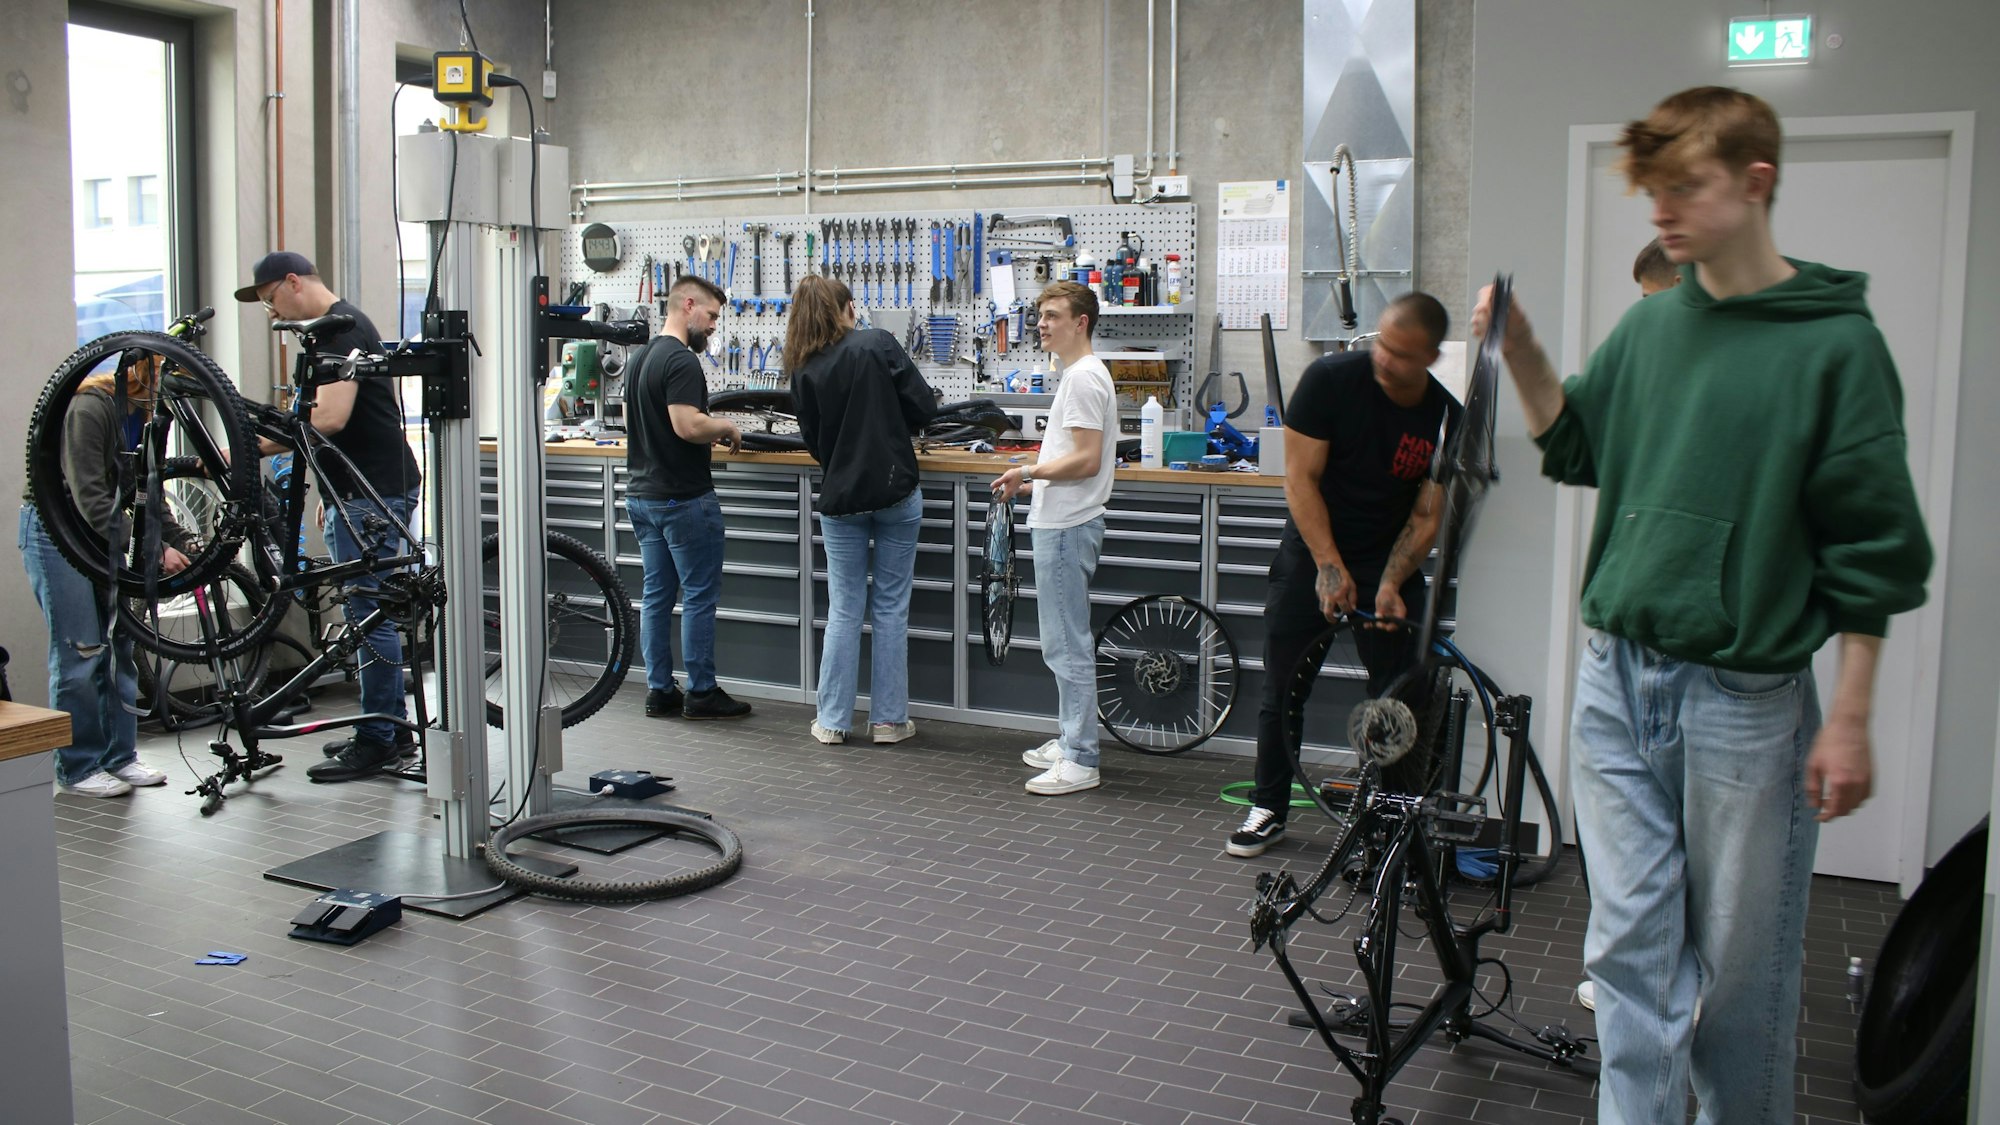 Mehrere Schüler schrauben in einer Werkstatt an Fahrrädern.